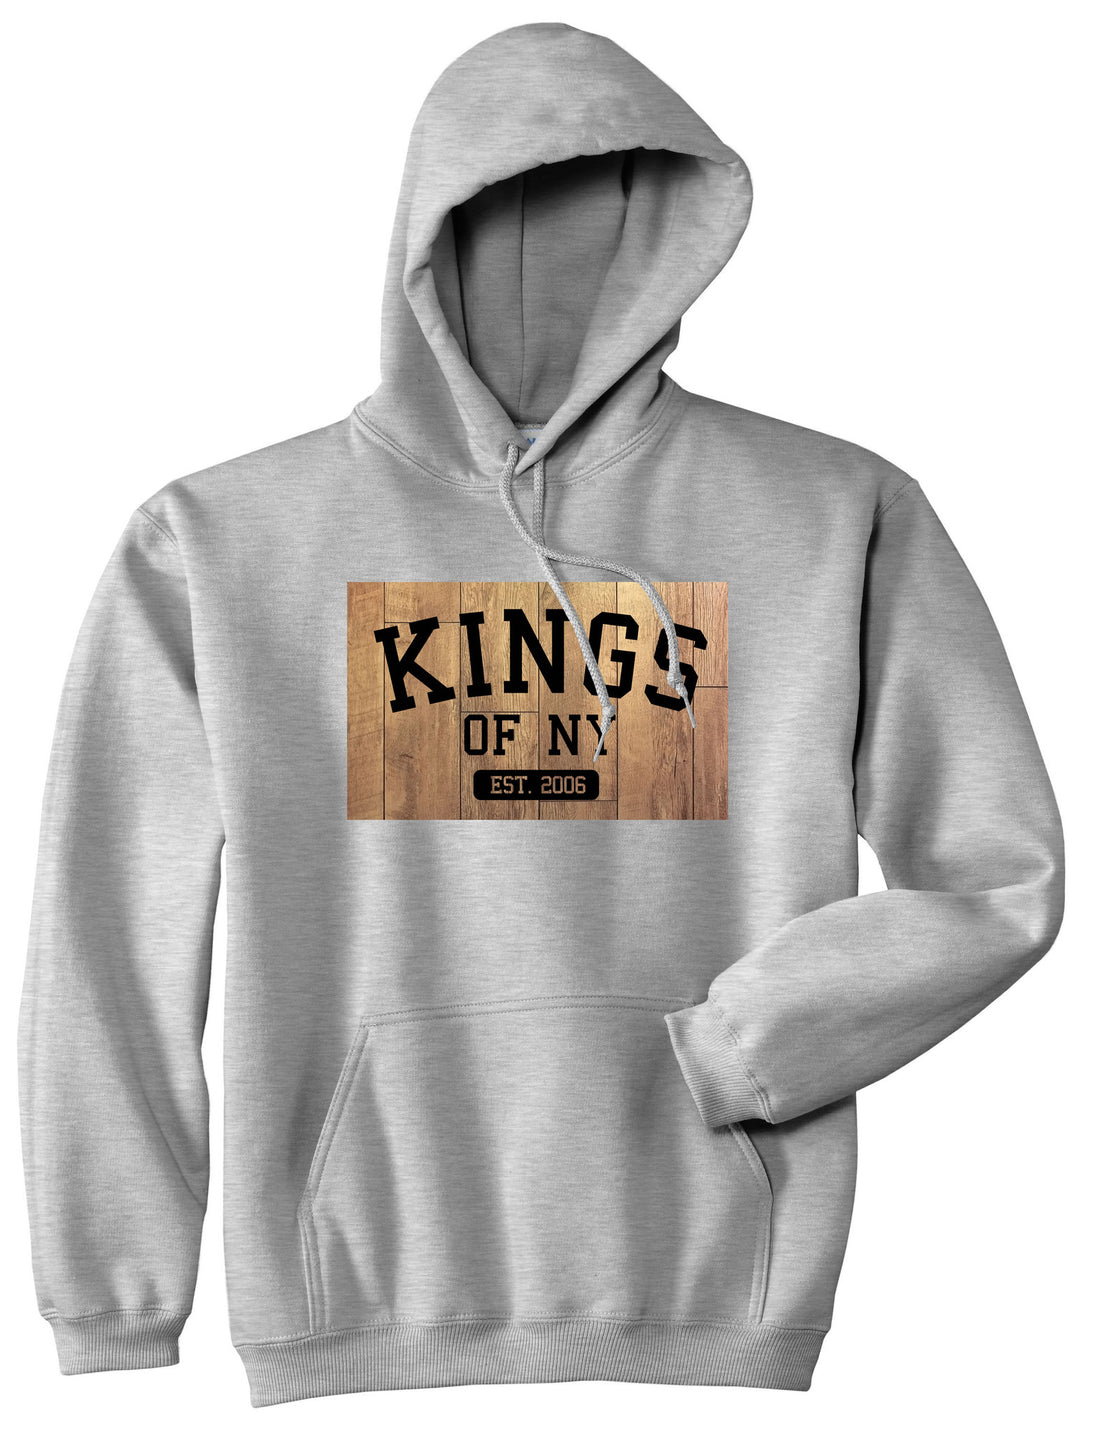 Hardwood Basketball Logo Pullover Hoodie Hoody in Grey by Kings Of NY